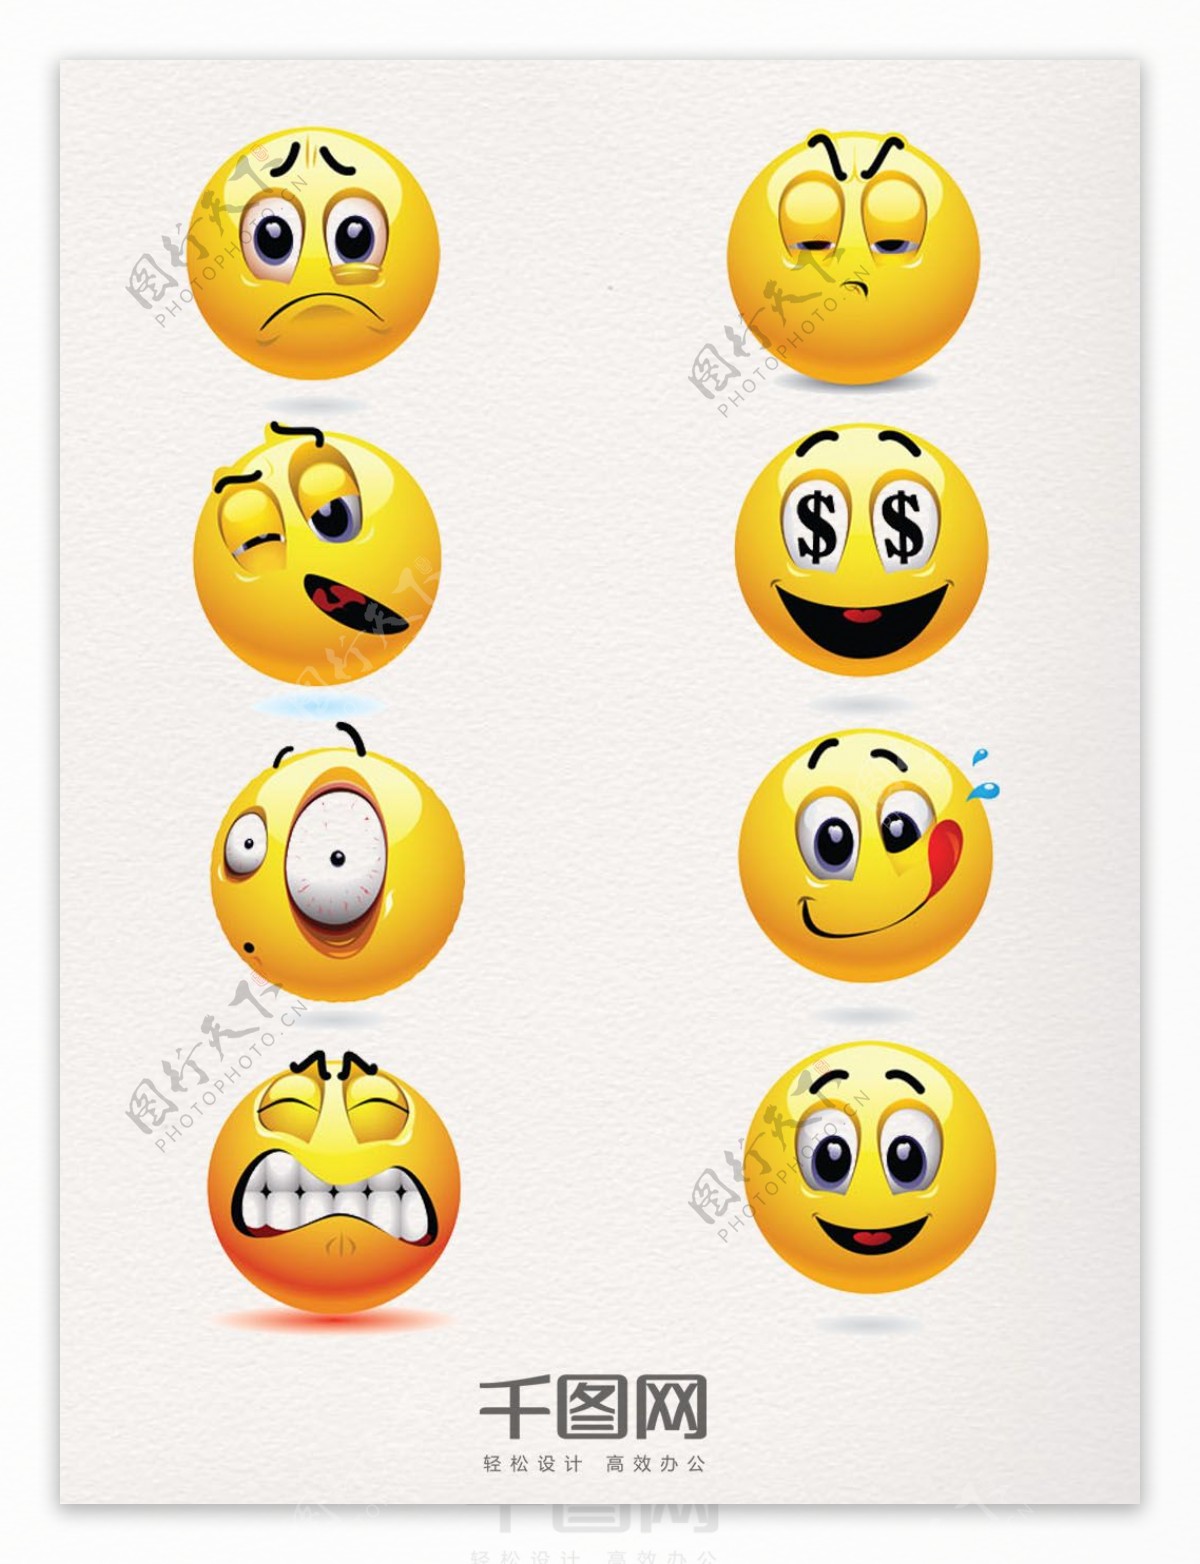 微信创意表情包图案